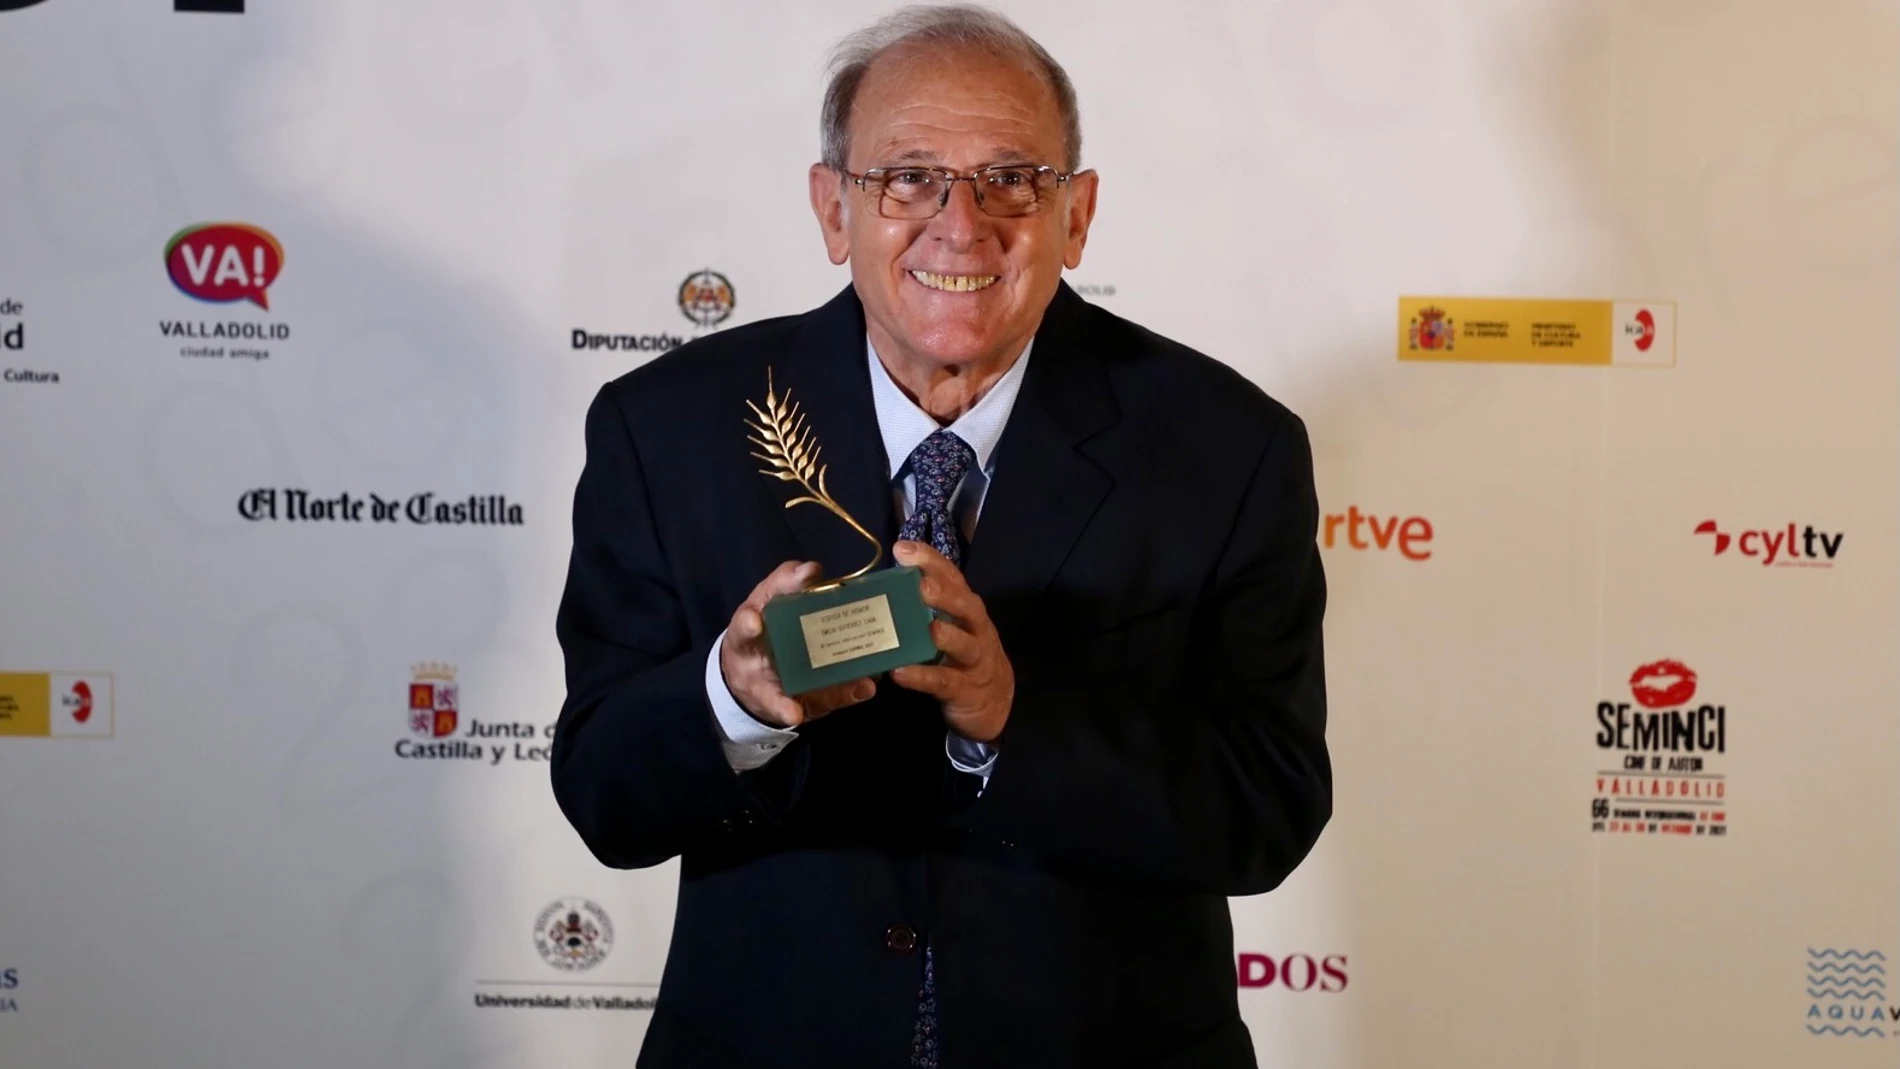 Entrega de la Espiga de Honor al actor vallisoletano Emilio Gutiérrez Caba